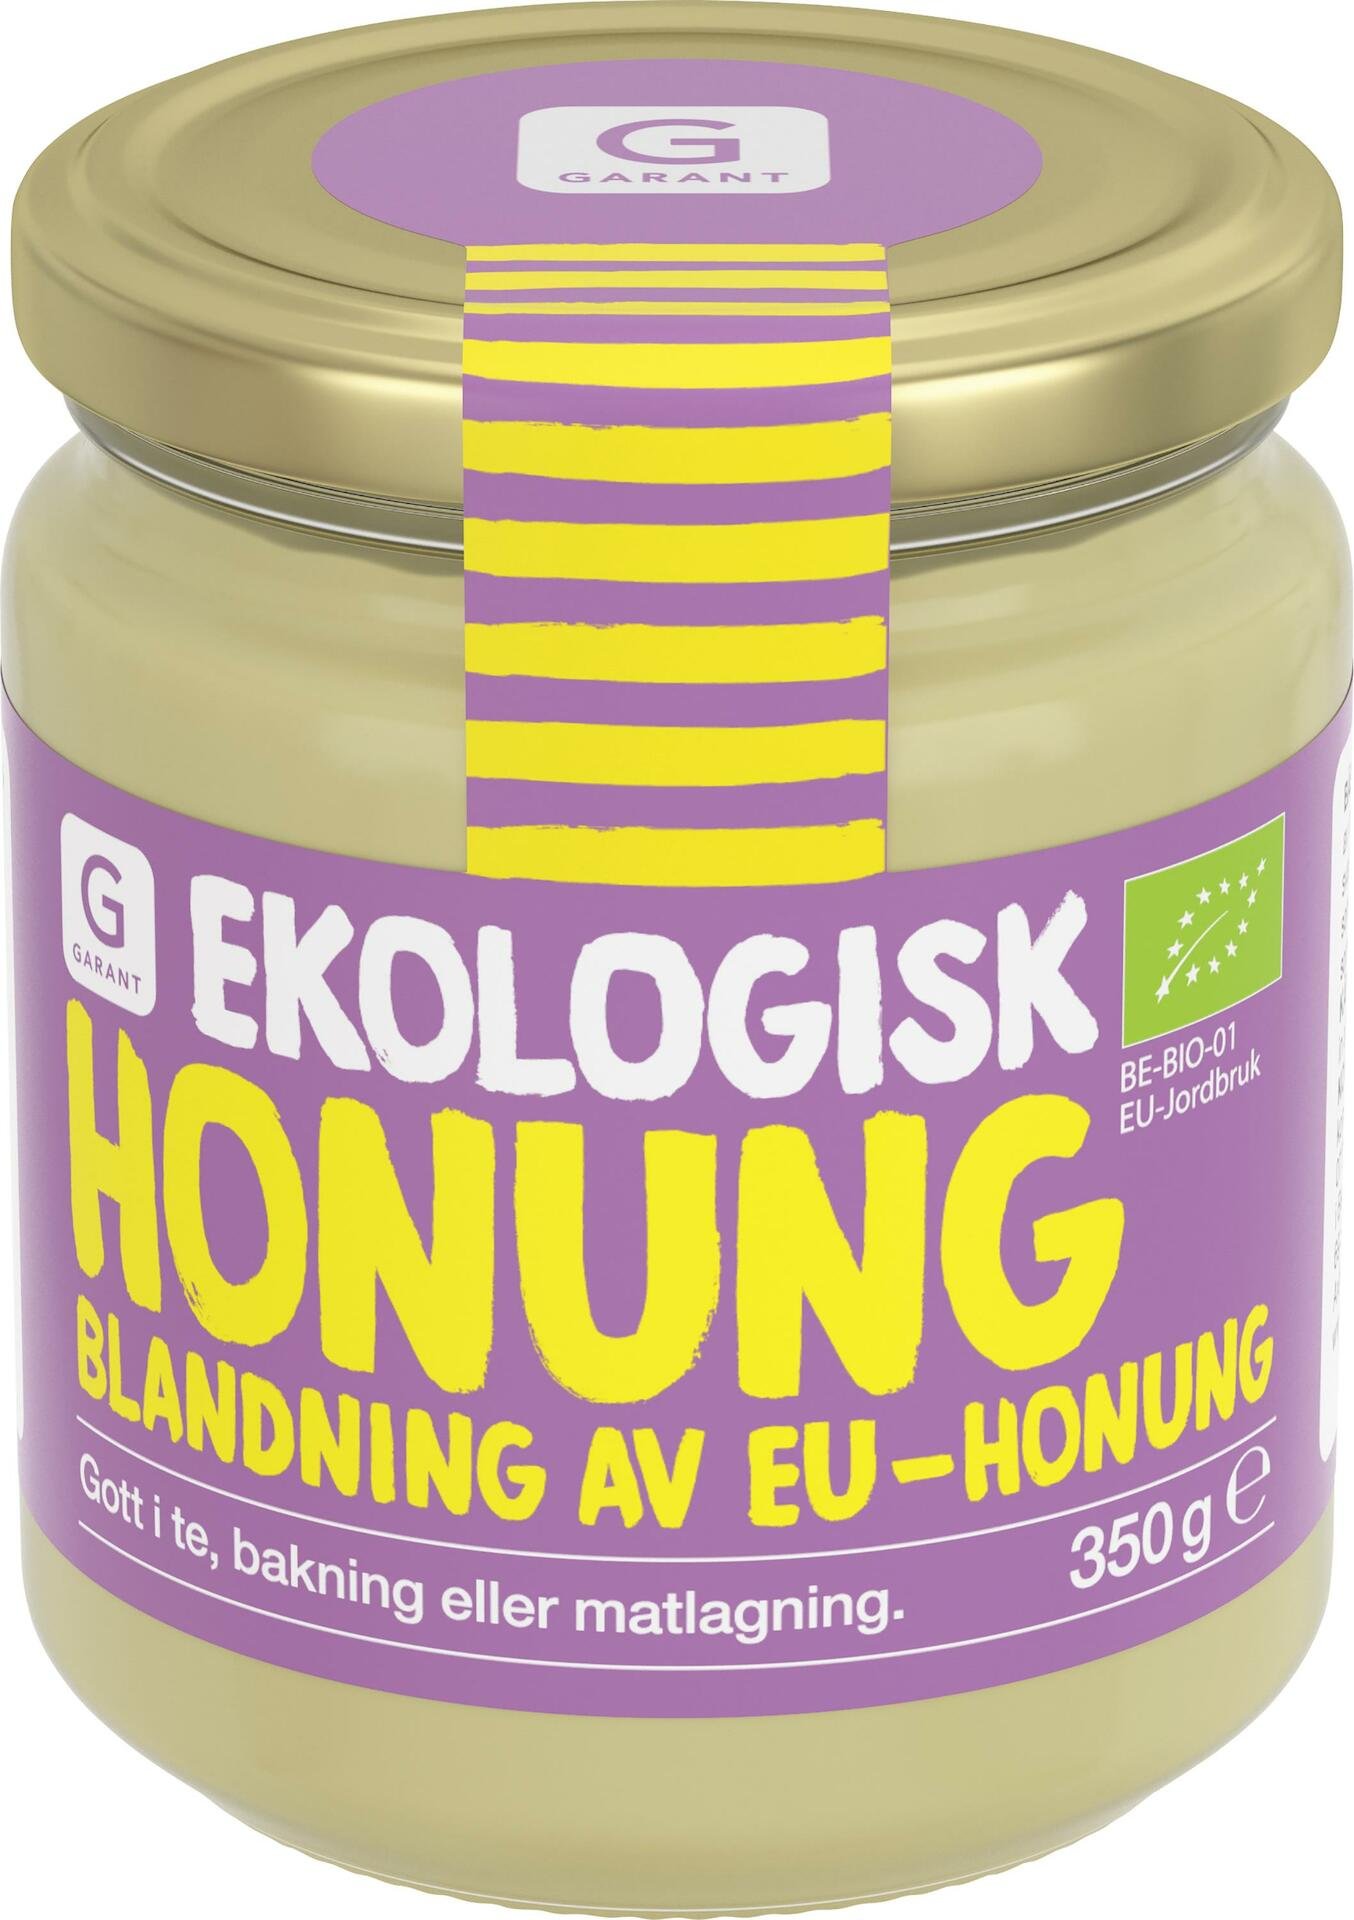 Garant Ekologisk Honung 350g